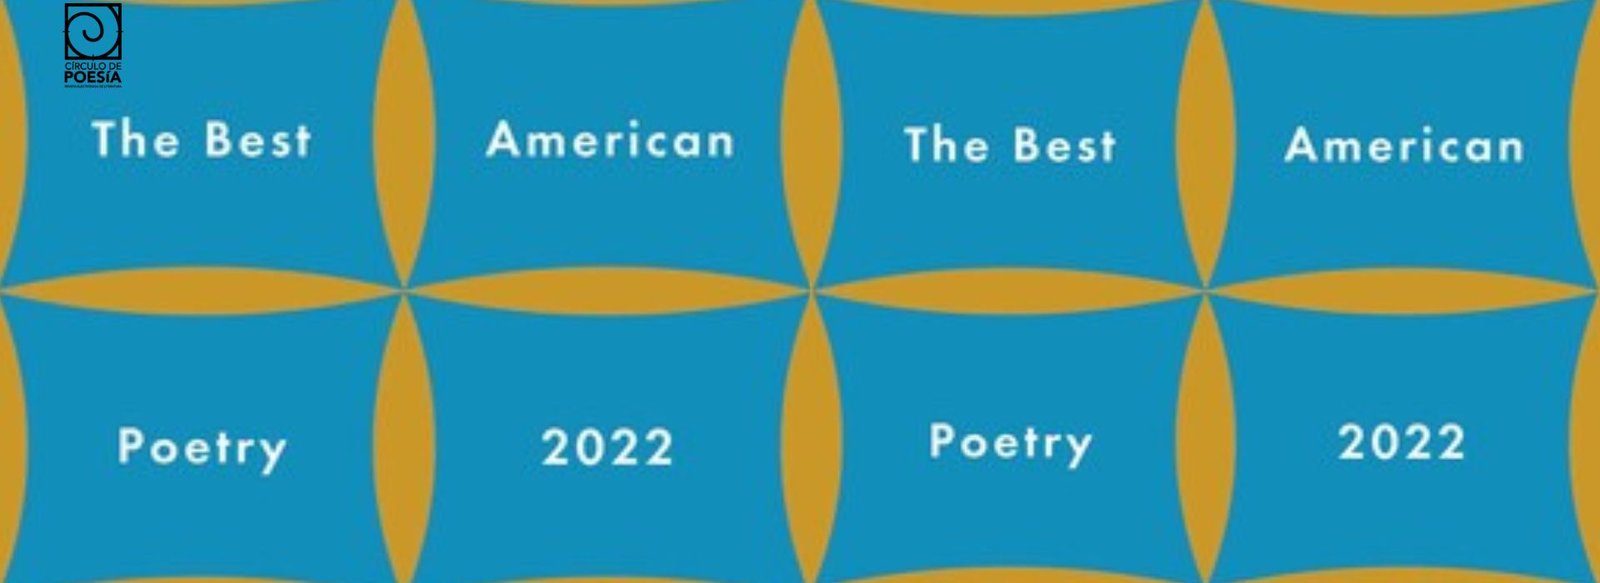 The Best American Poetry 2022 Circulo de Poesía